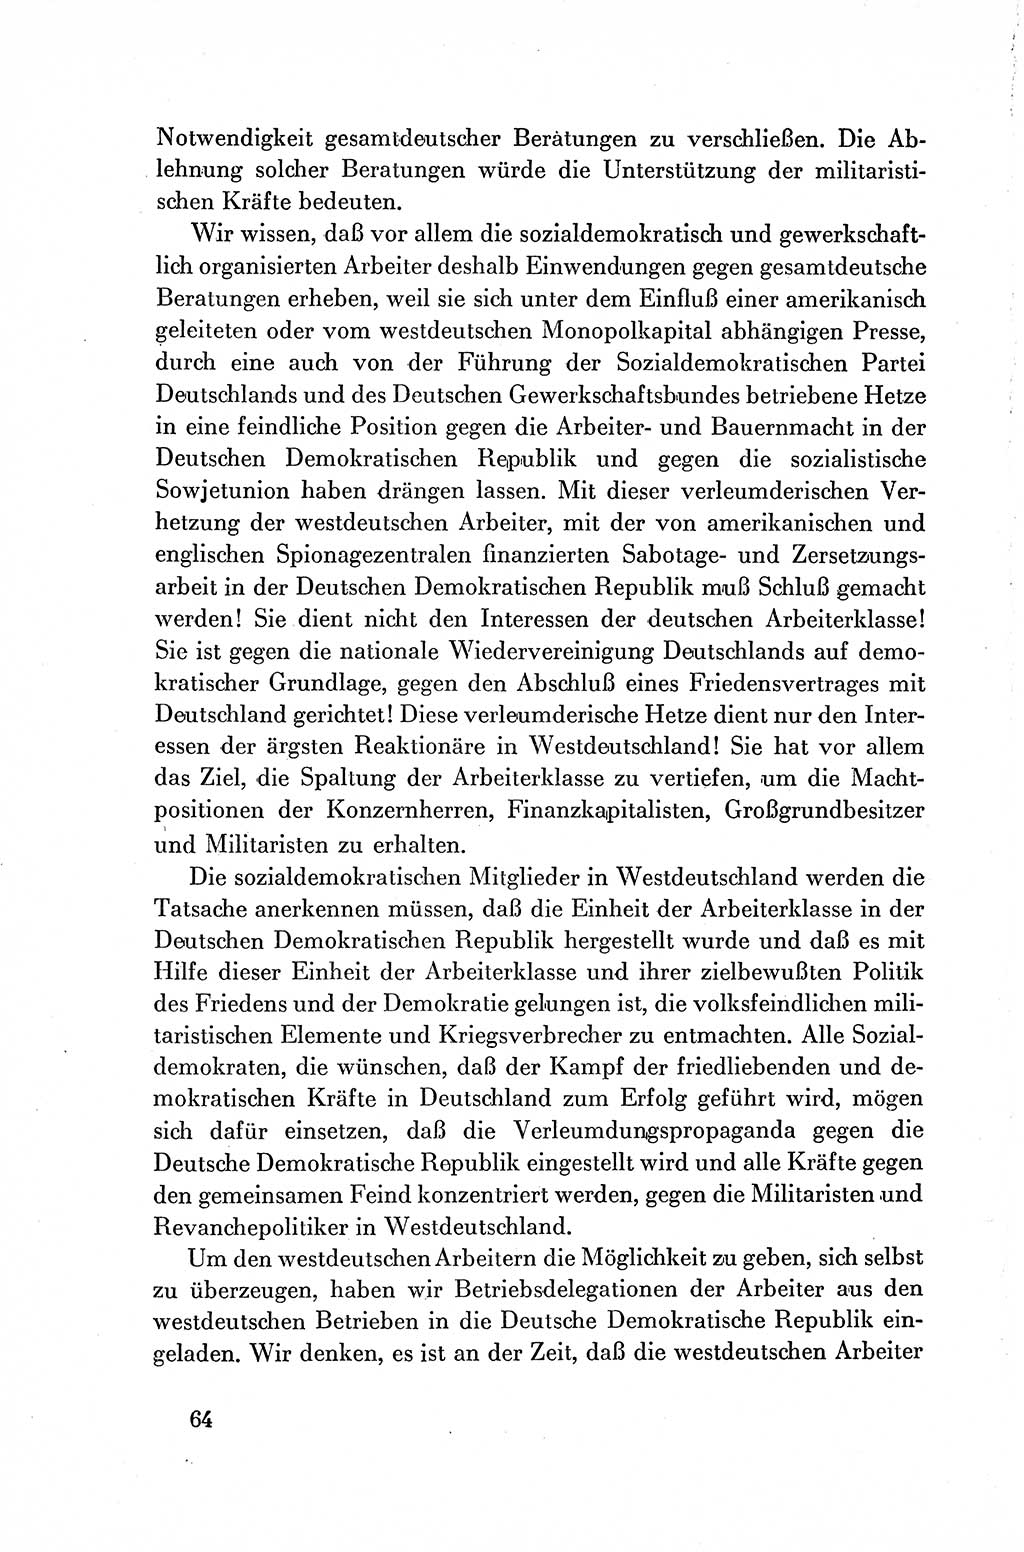 Dokumente der Sozialistischen Einheitspartei Deutschlands (SED) [Deutsche Demokratische Republik (DDR)] 1954-1955, Seite 64 (Dok. SED DDR 1954-1955, S. 64)